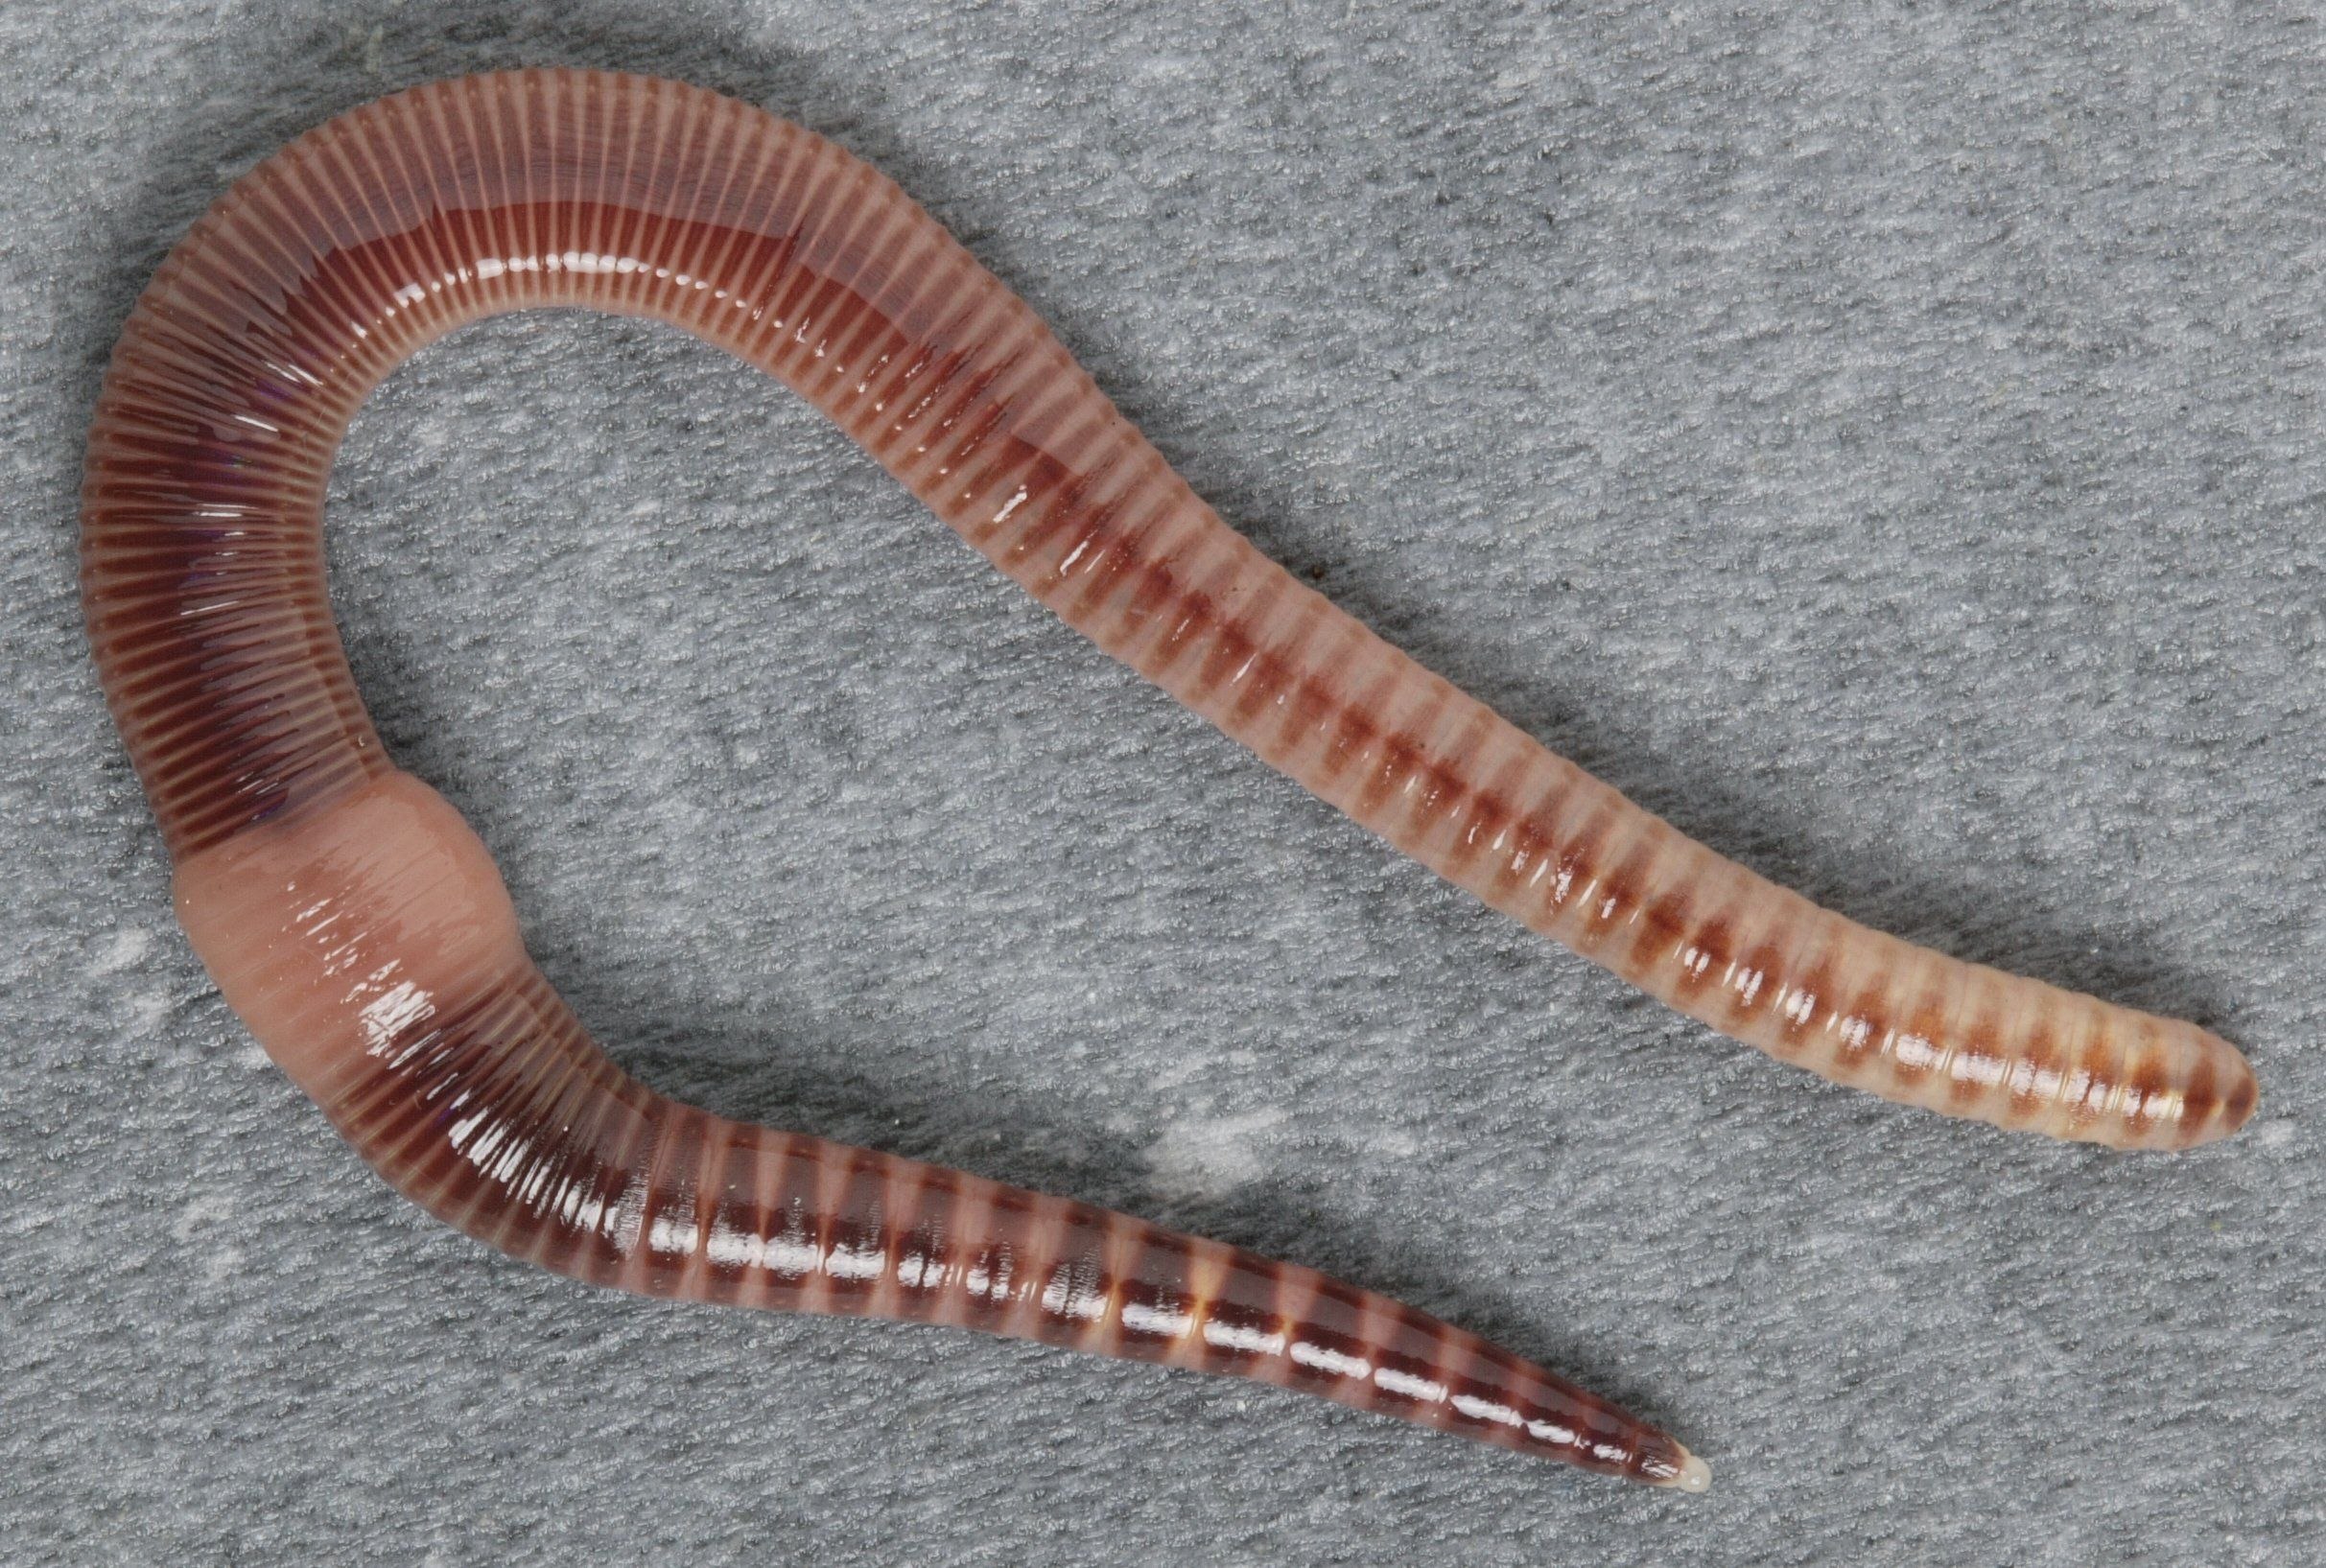 Дождевой червь обитатель. Малошетниковфй крльчатые черви. Малощетинковые кольчатые черви. Малощетинковые черви (дождевой червь). Oligochaeta (Малощетинковые черви).